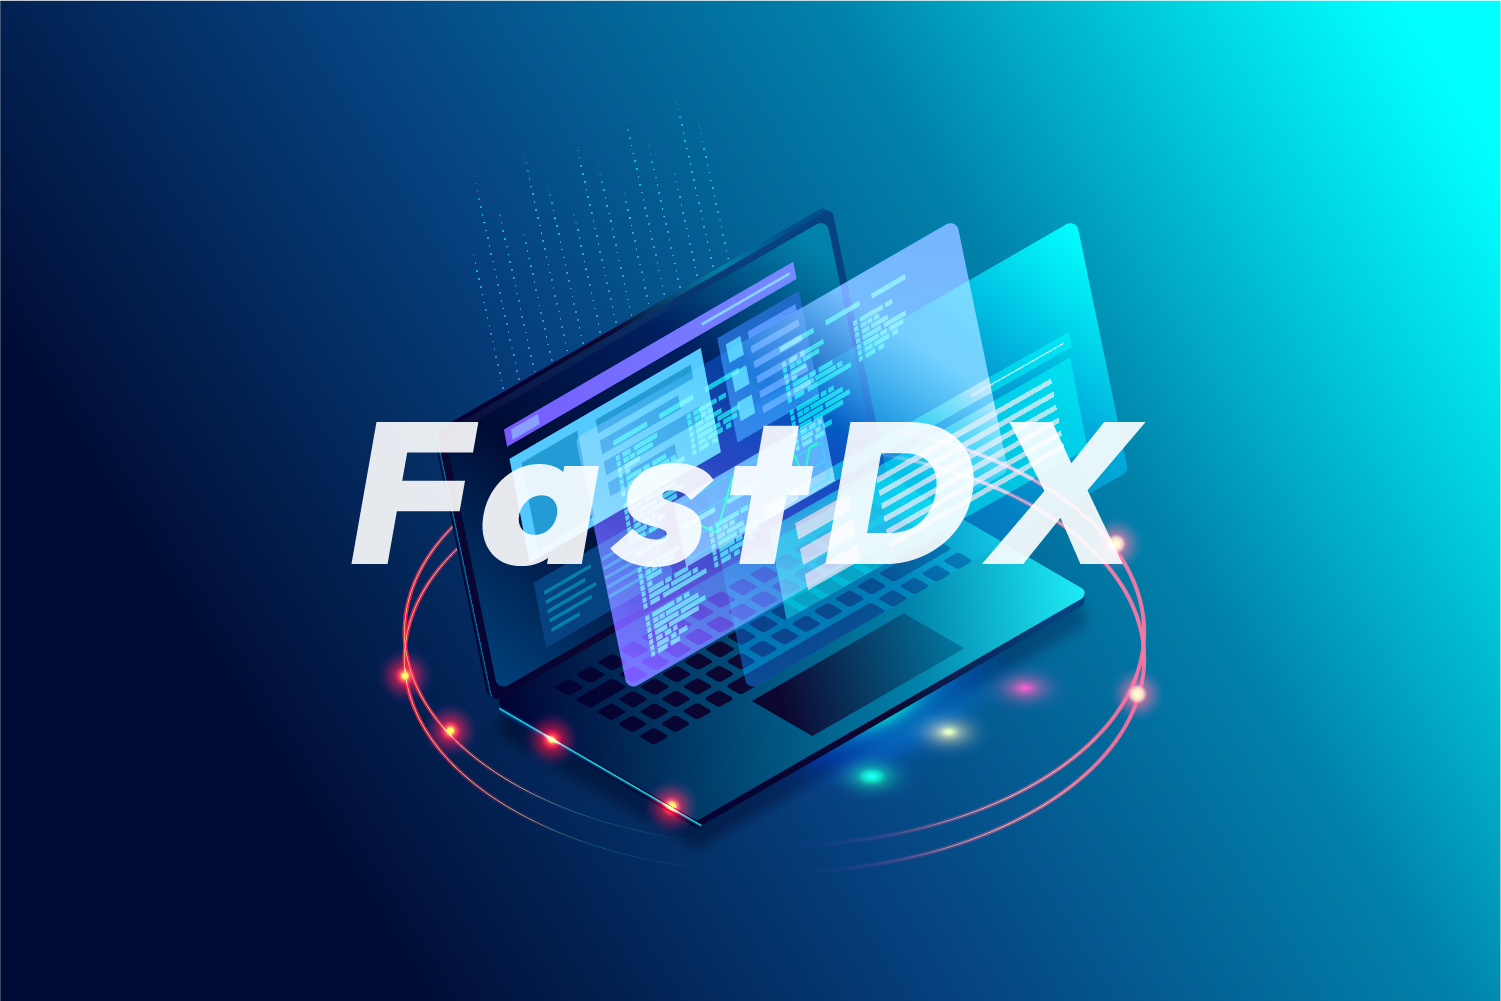 FastDX